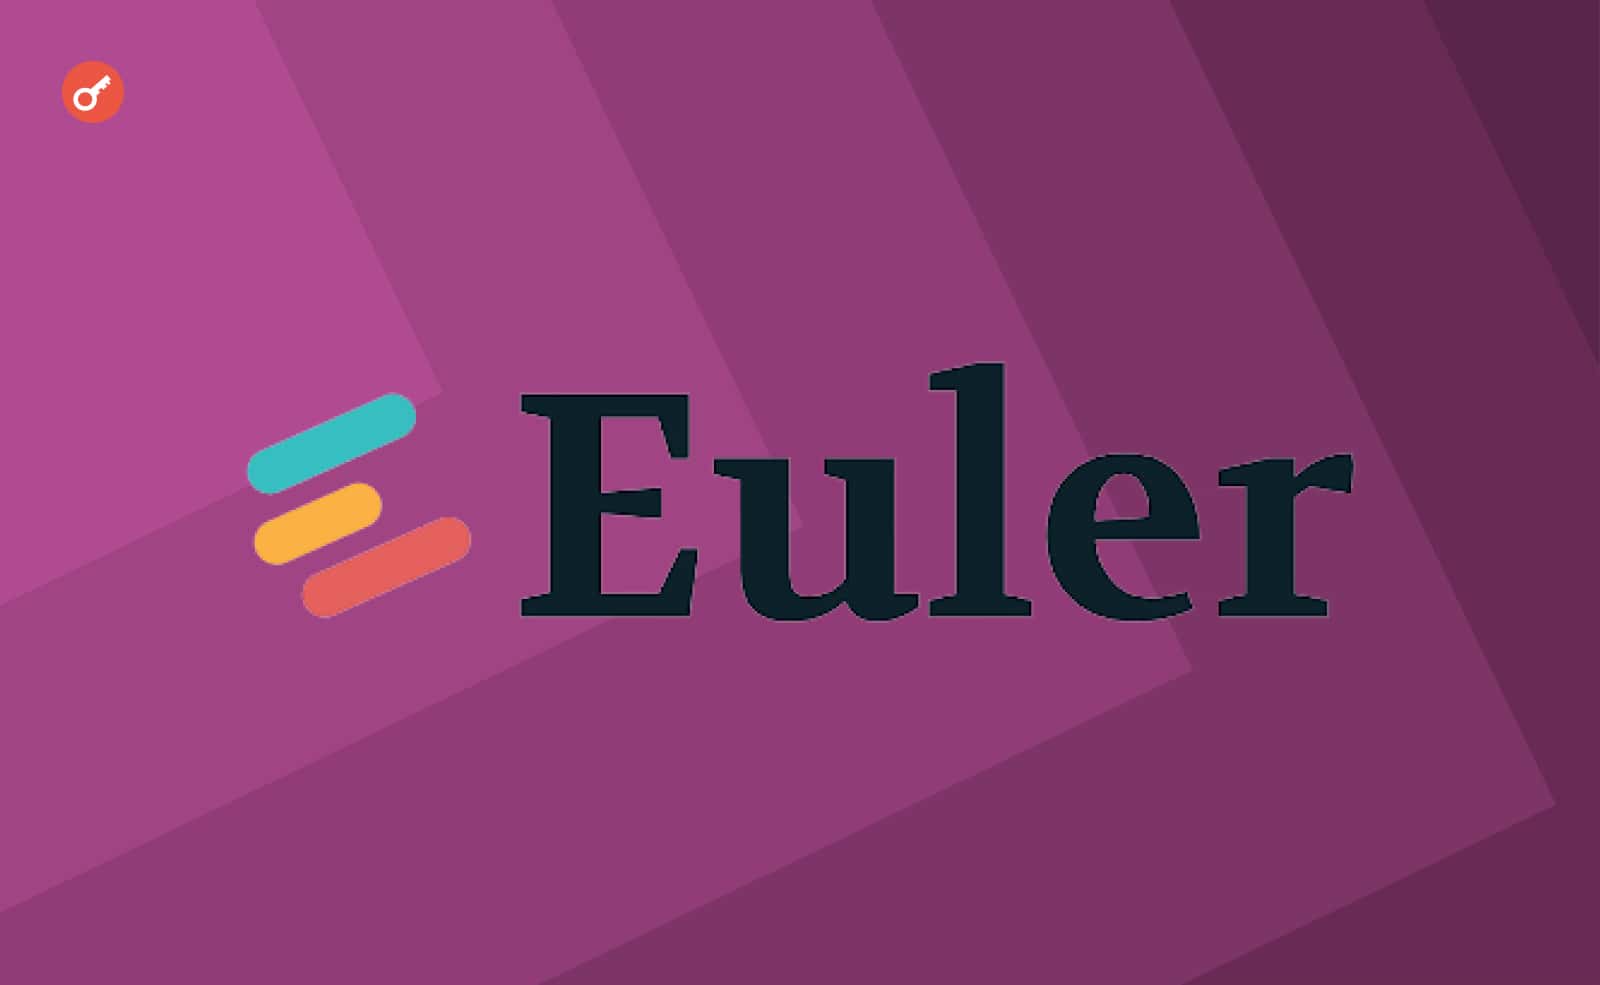 Euler Finance повернуть кошти клієнтам. Головний колаж новини.